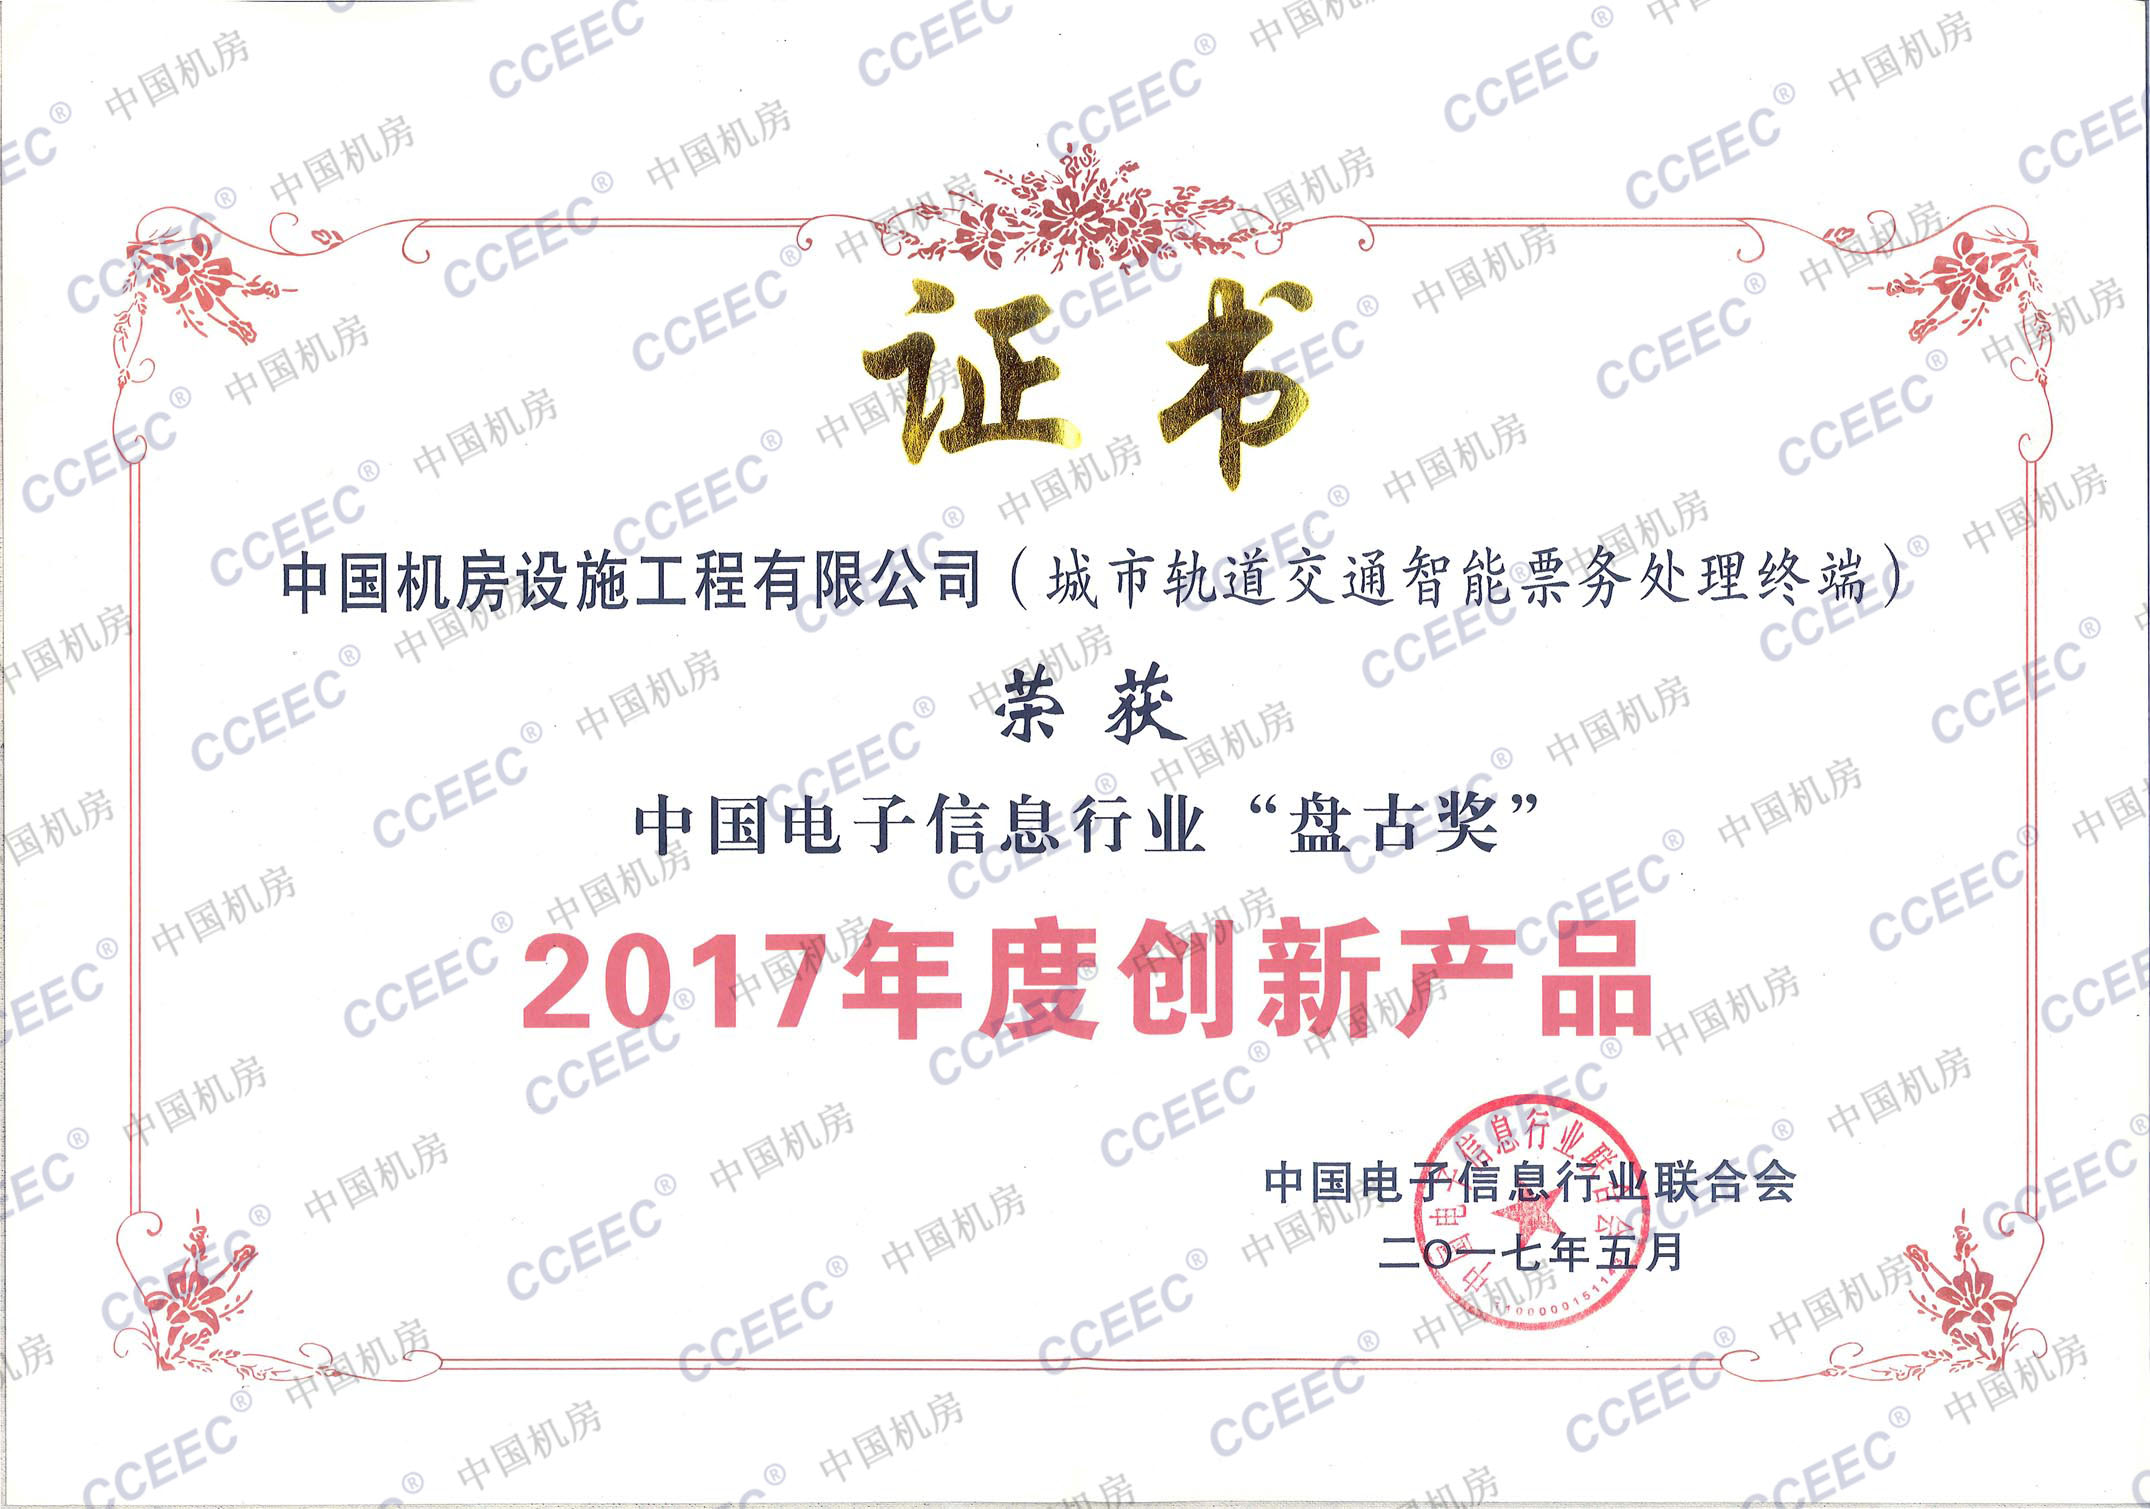 2017年度中国电子信息行业“盘古奖”.jpg